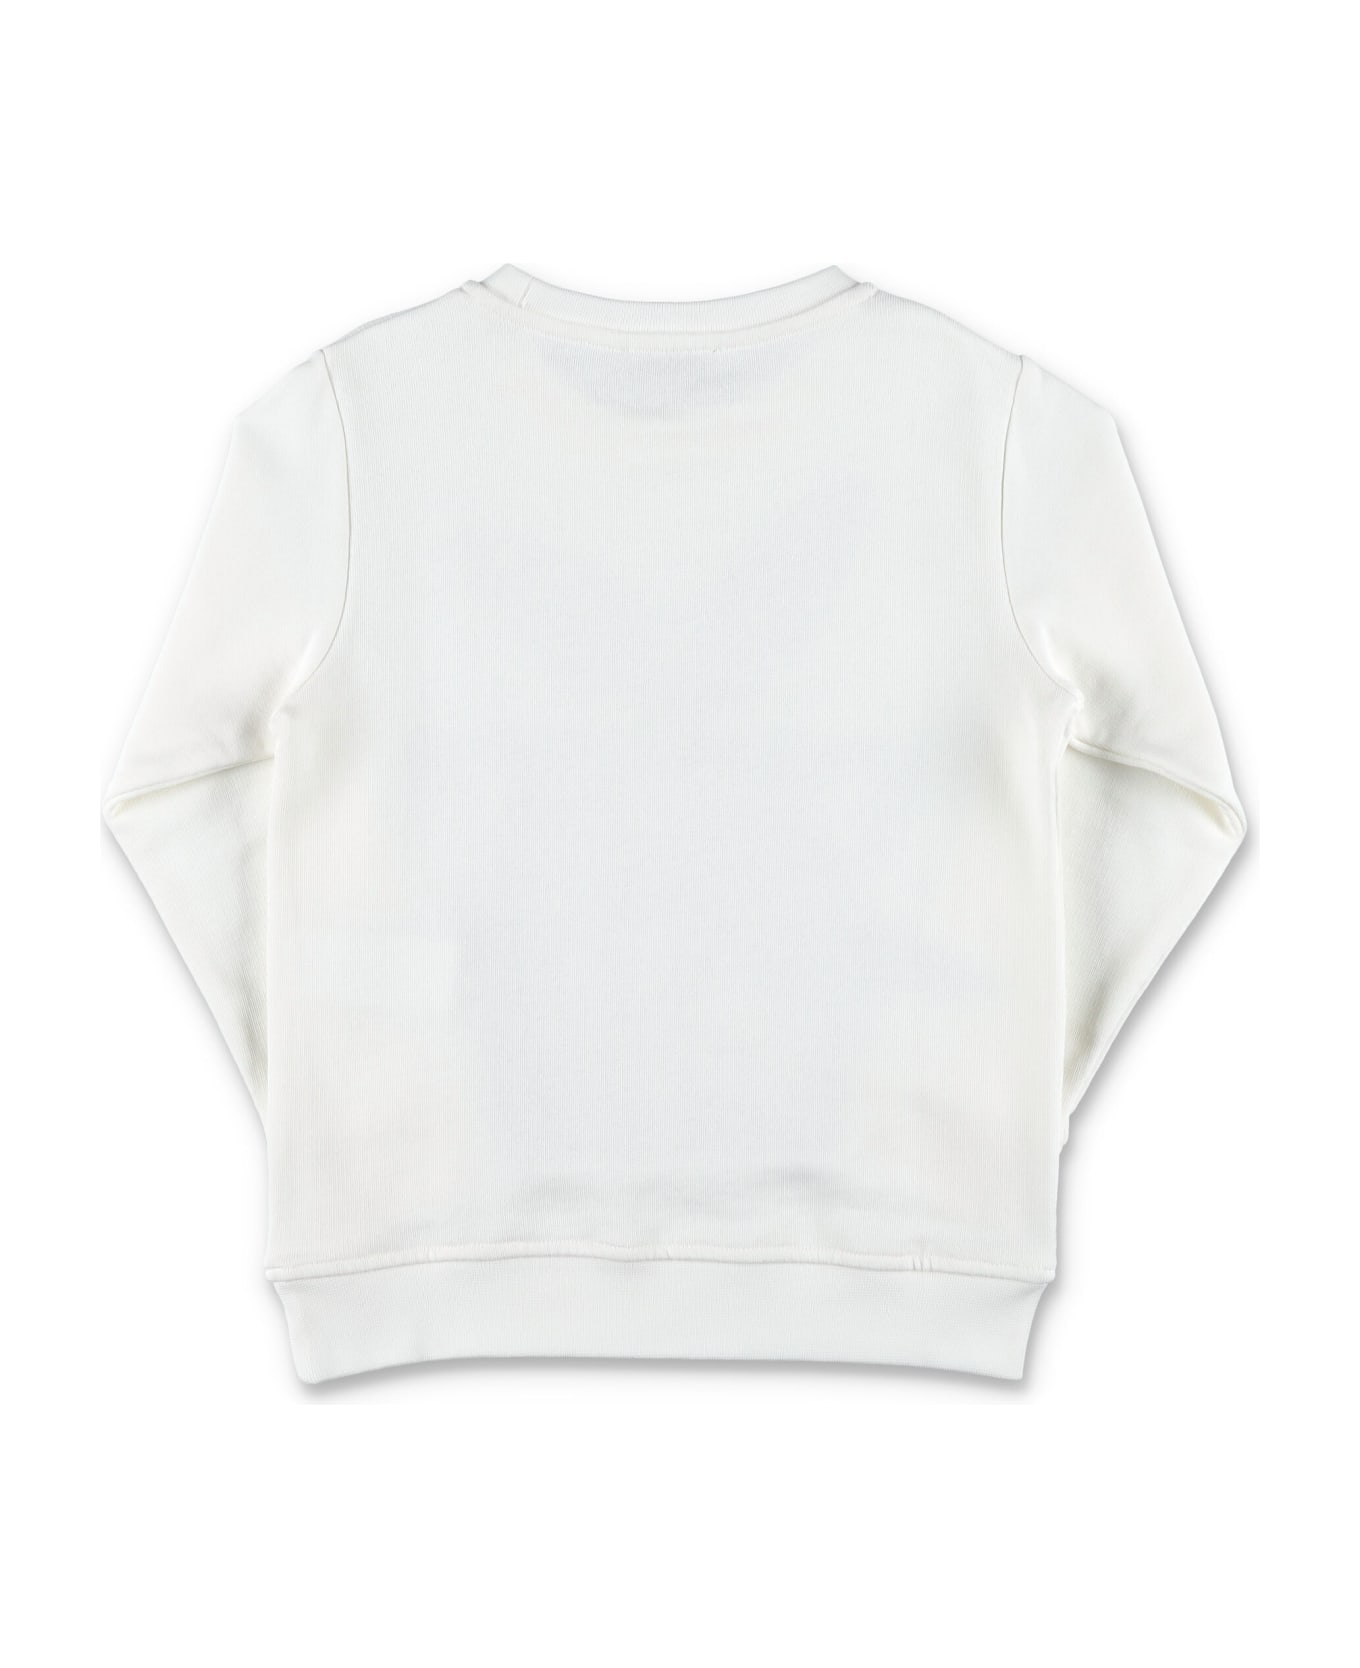 Stella McCartney Kids Shark Sweatshirt - WHITE